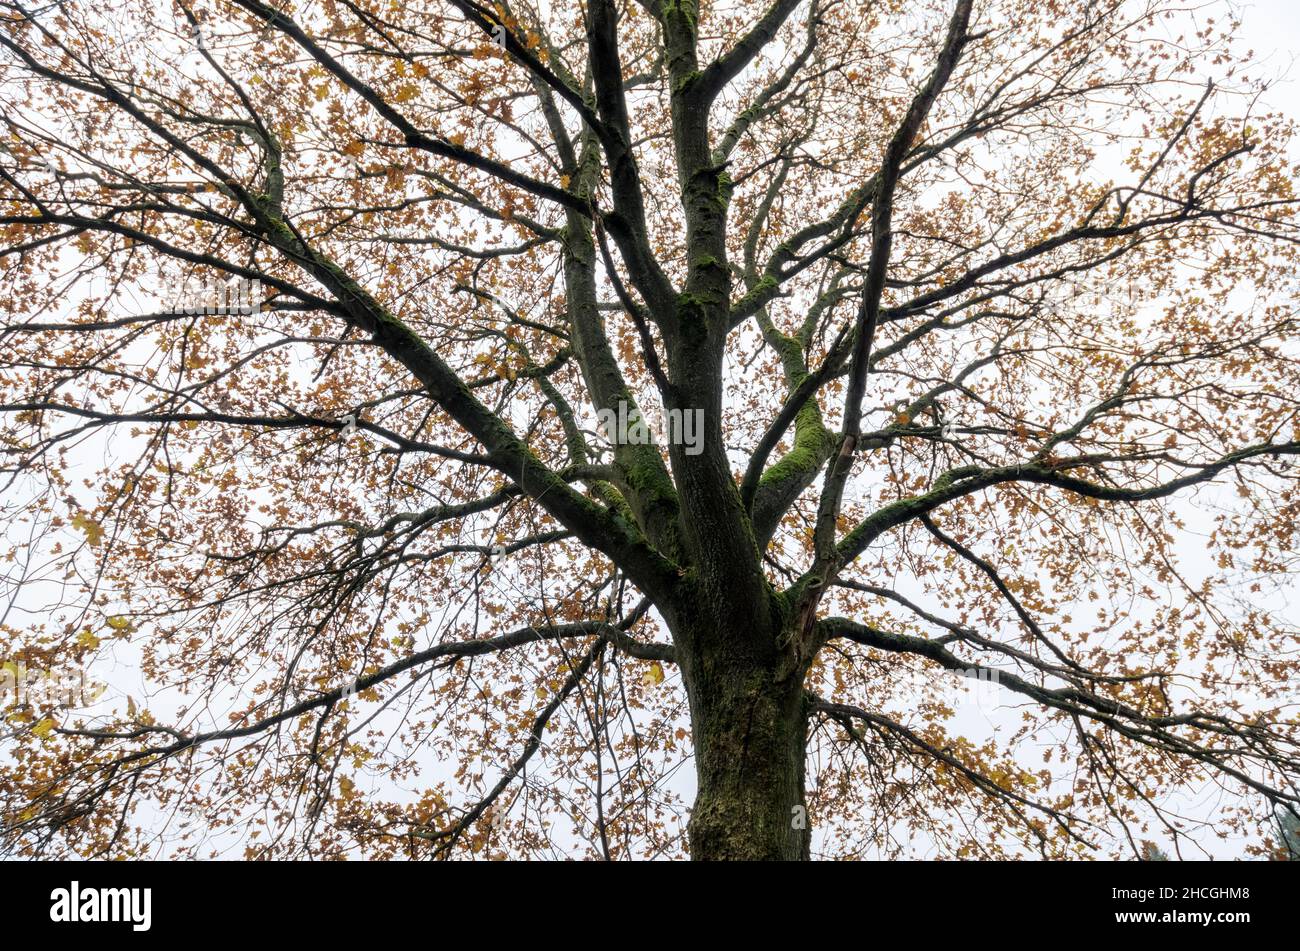 Recherche des branches et des brindilles d'un chêne (Quercus) pendant la saison d'automne Banque D'Images